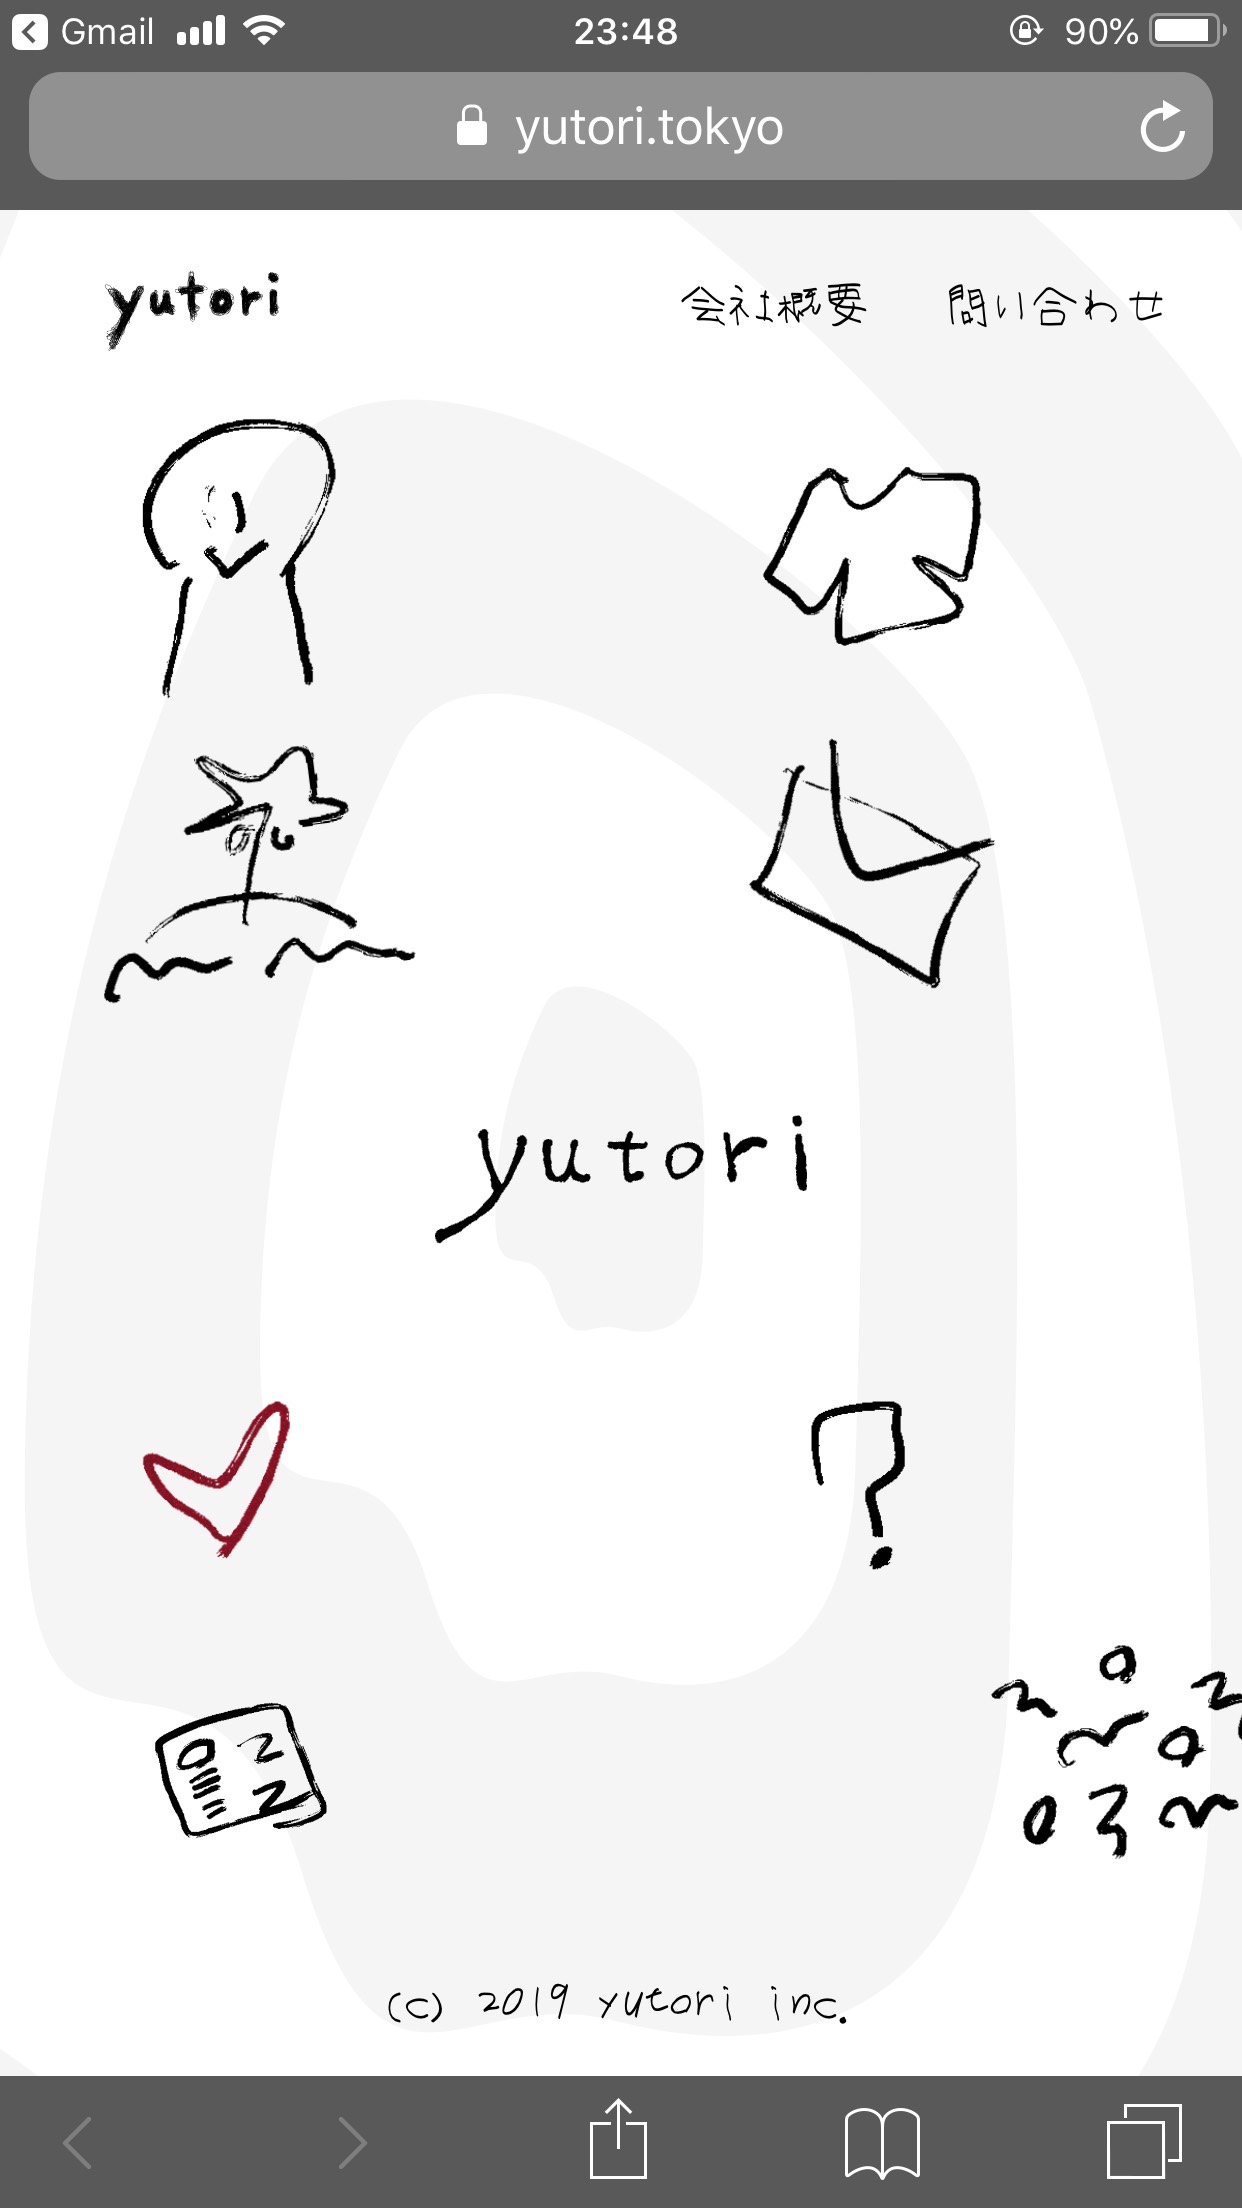 yutori Inc. | ミレニアルコンテンツカンパニー